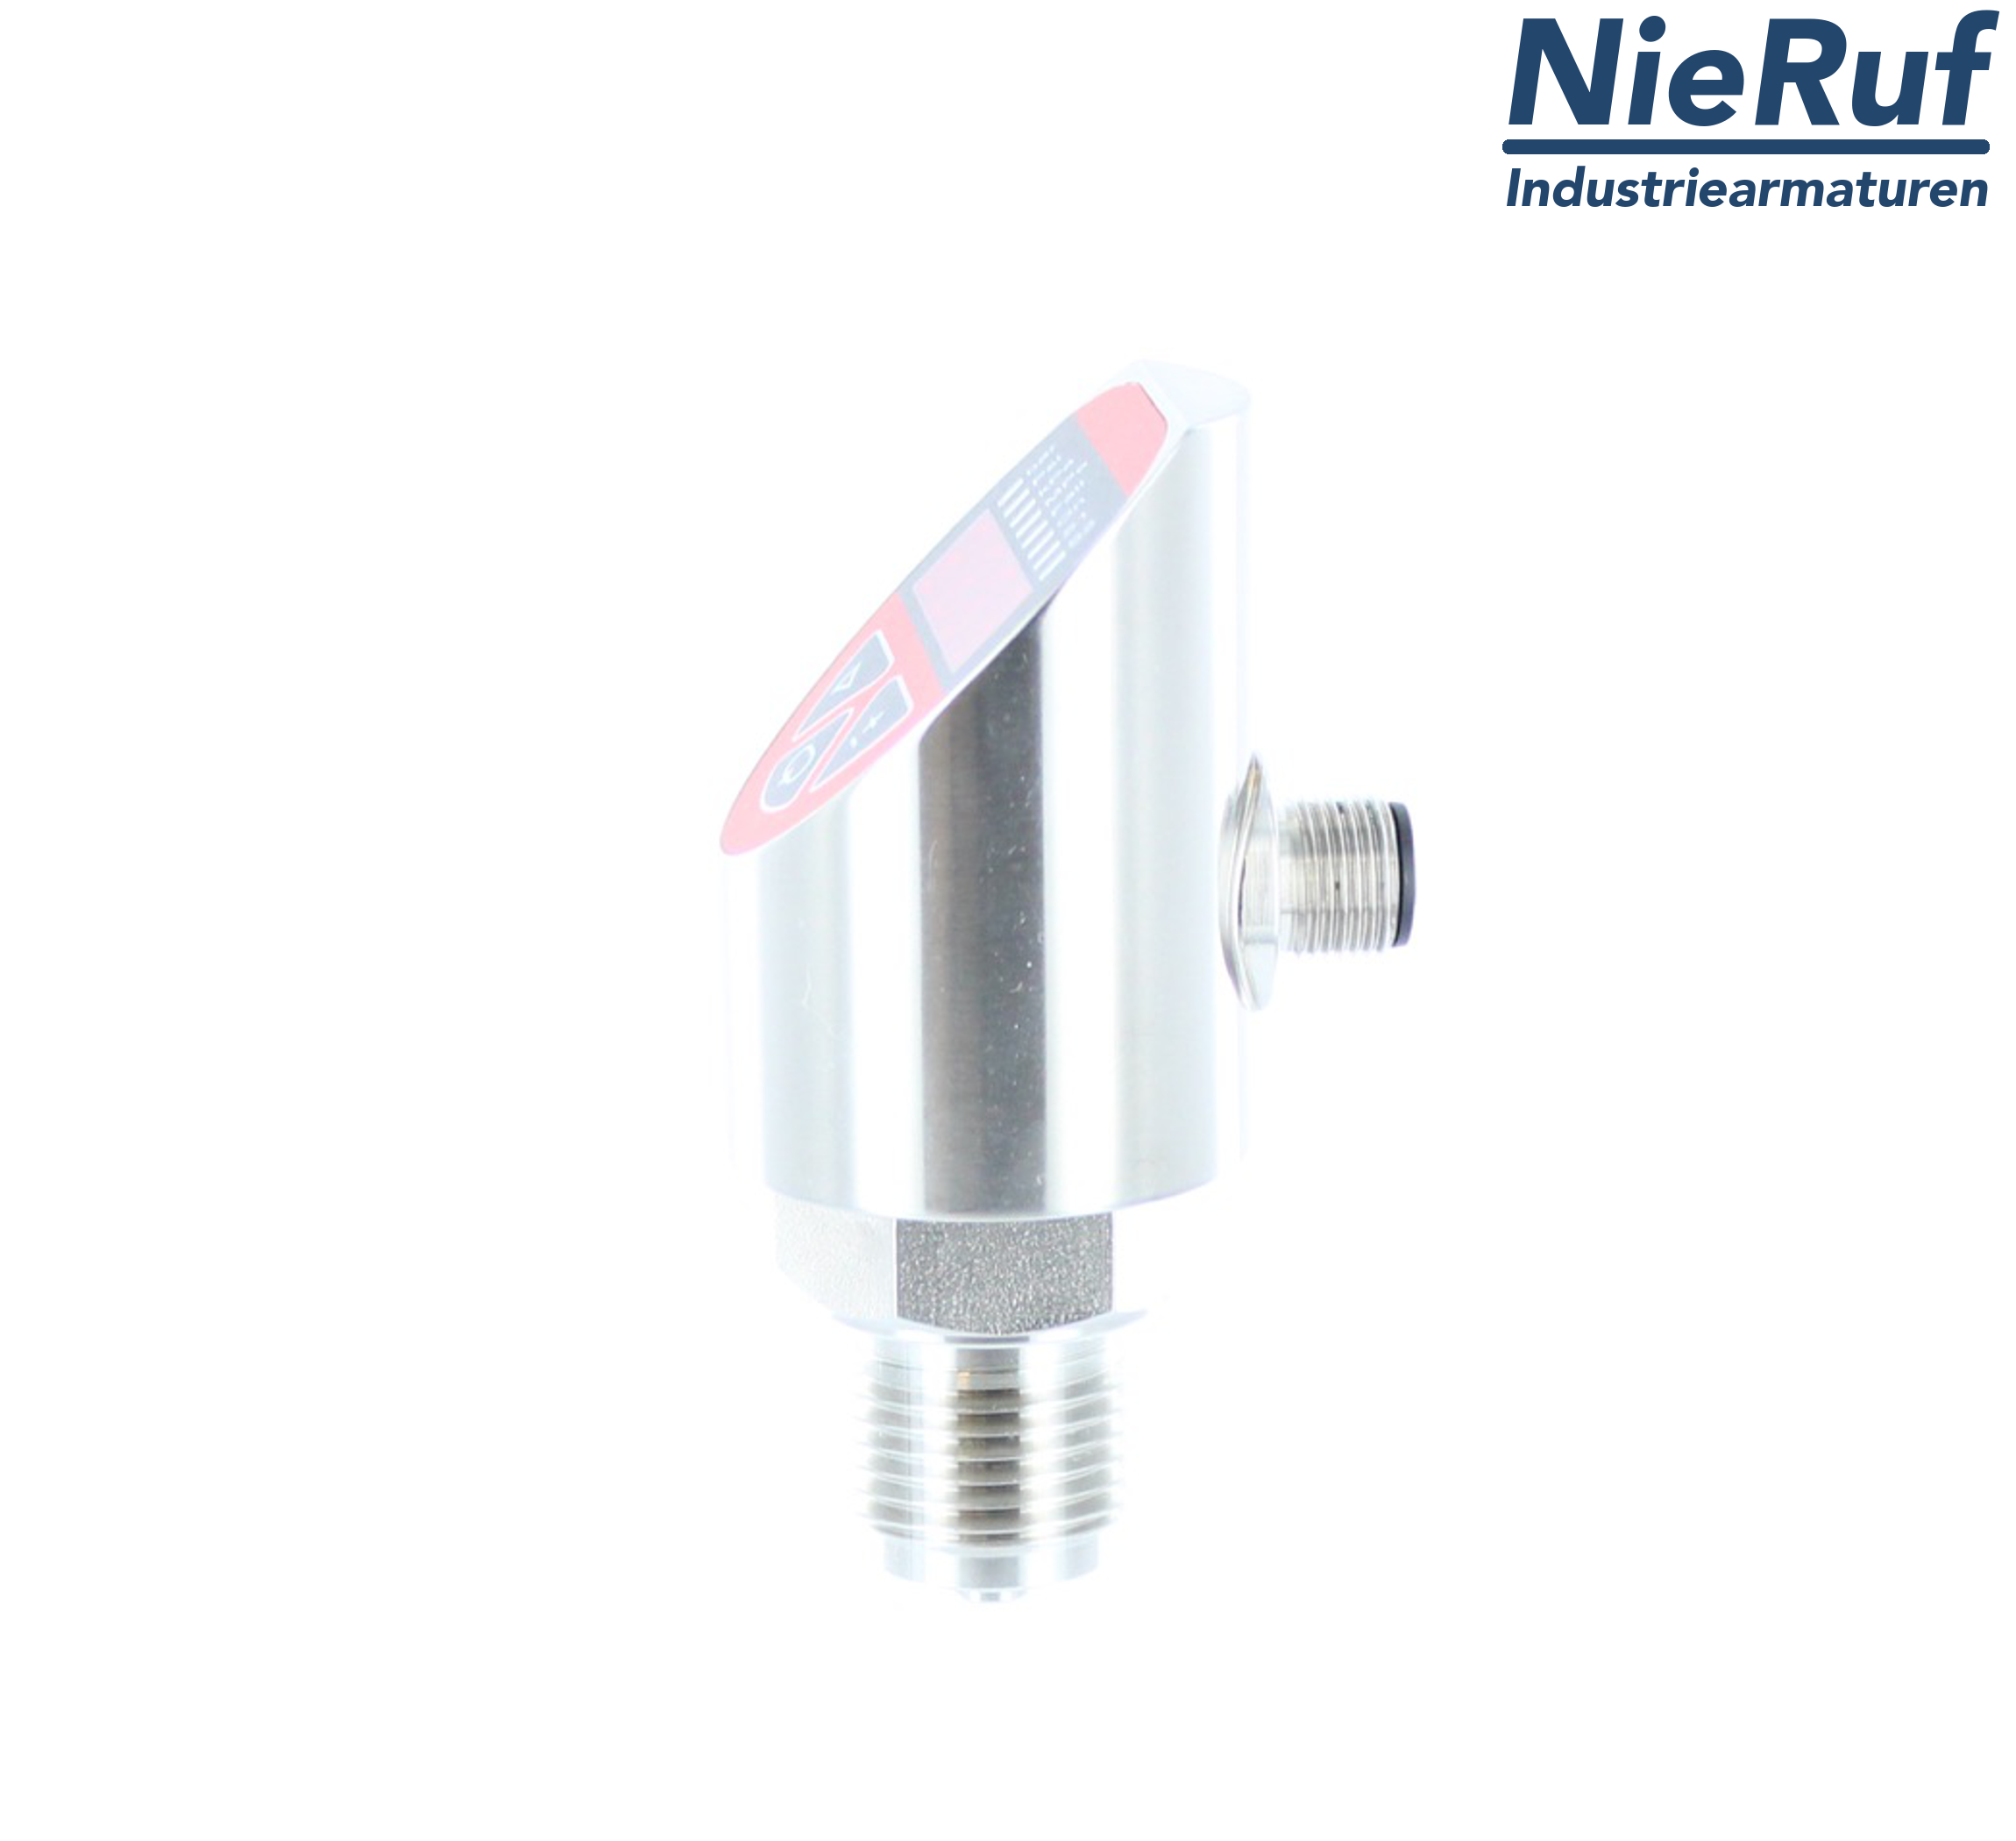 digital pressure sensor G 1/2" B IB 4-wire: 1xPNP, 1x4 - 20mA, Desina FPM 0,0 - 4,0 bar